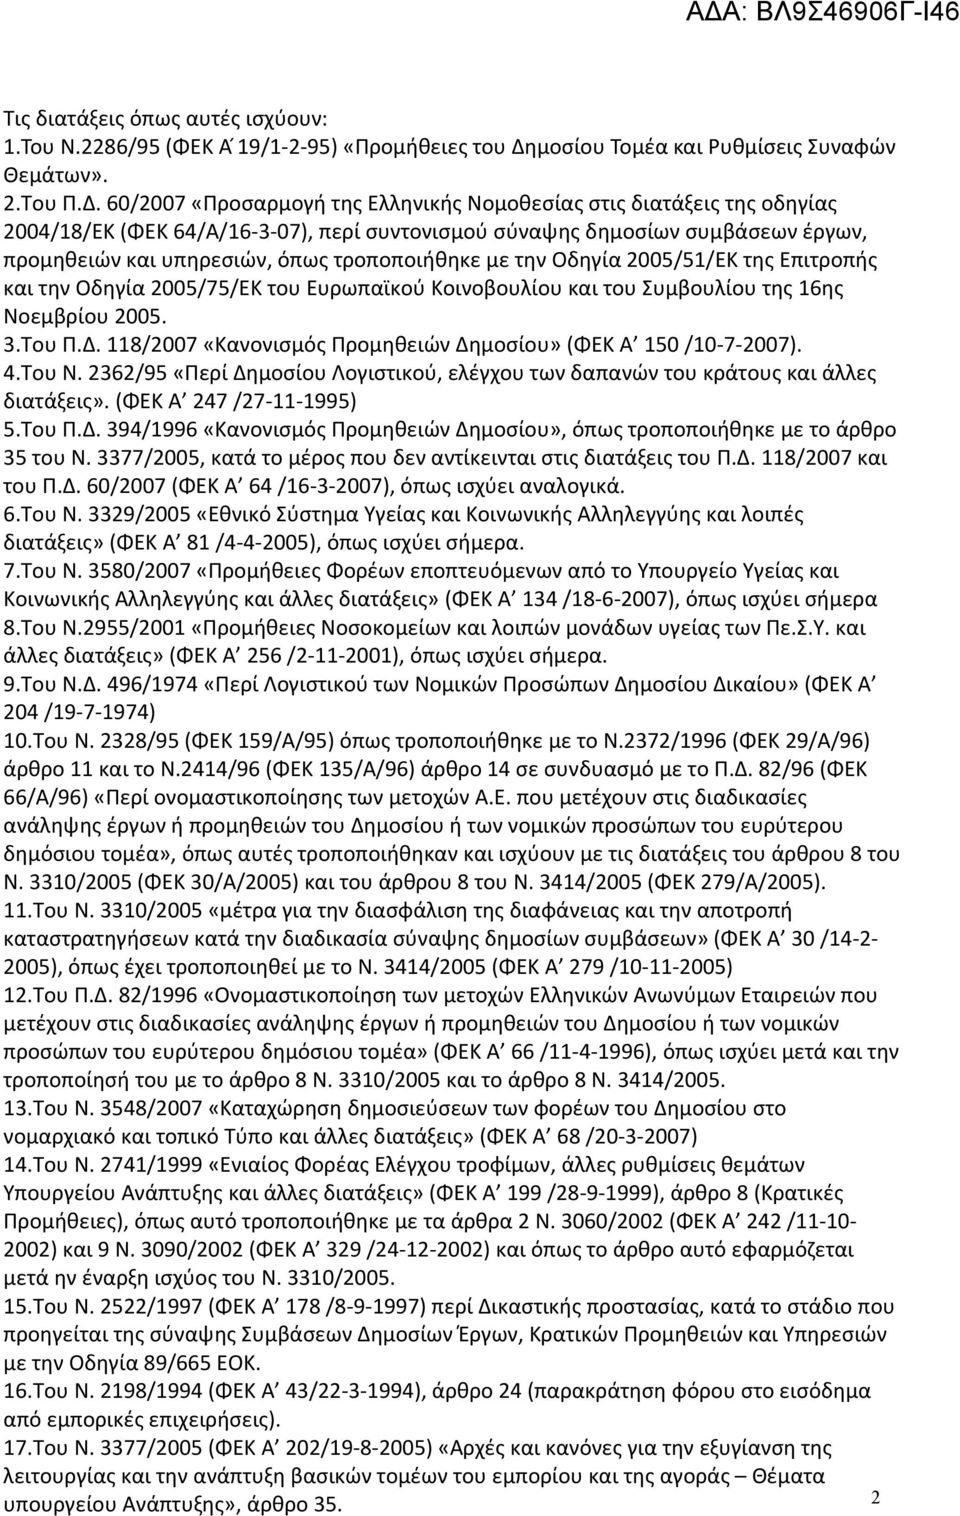 60/2007 «Προσαρμογή της Ελληνικής Νομοθεσίας στις διατάξεις της οδηγίας 2004/18/ΕΚ (ΦΕΚ 64/Α/16-3-07), περί συντονισμού σύναψης δημοσίων συμβάσεων έργων, προμηθειών και υπηρεσιών, όπως τροποποιήθηκε